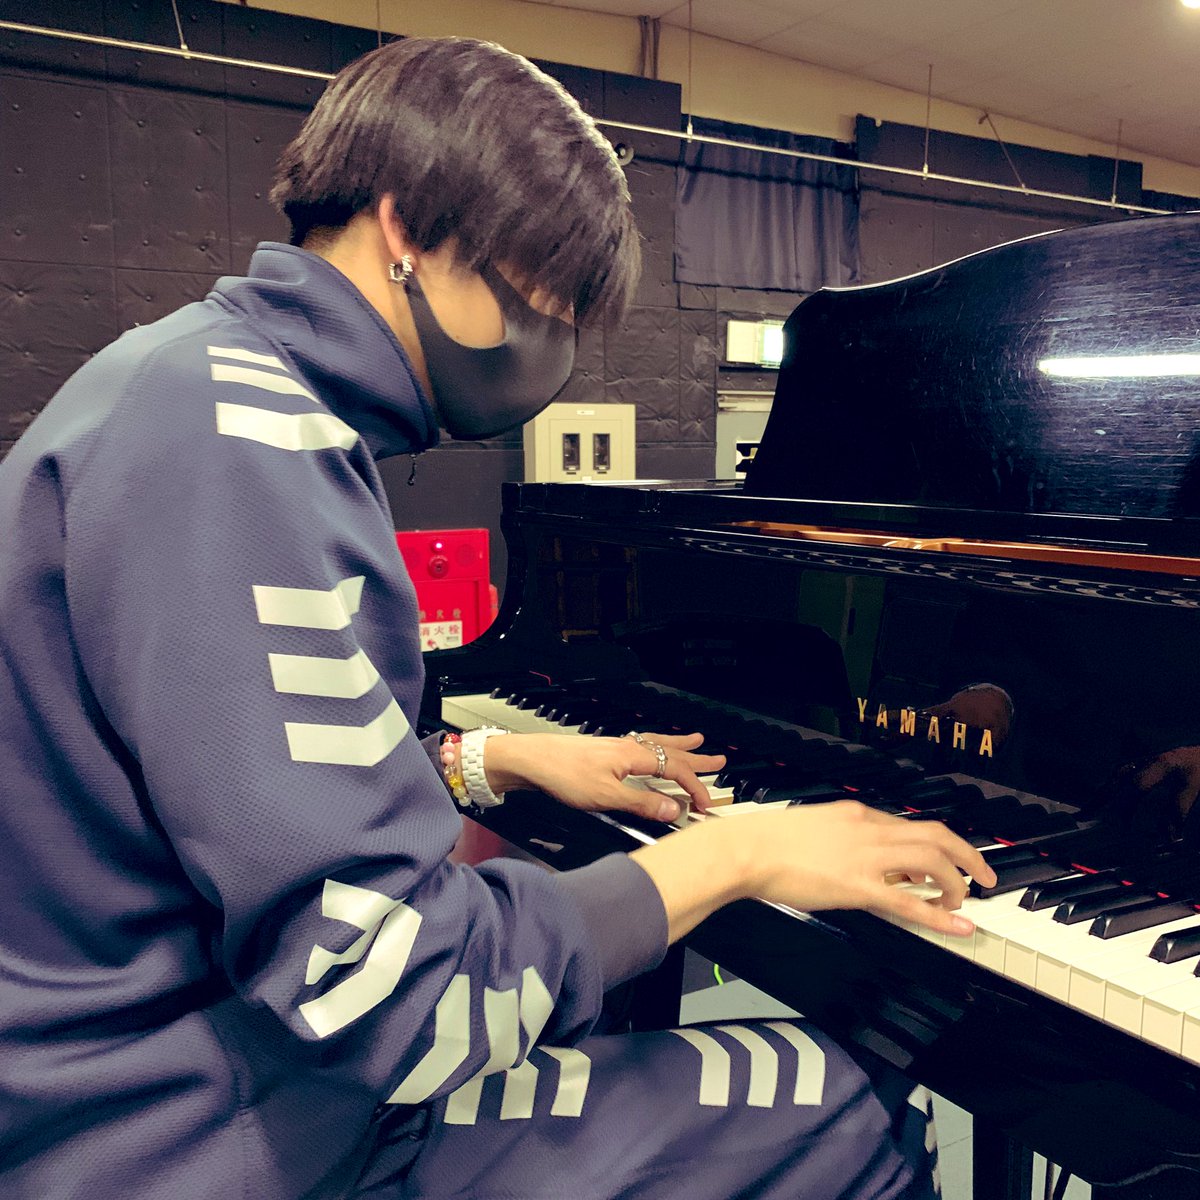 赤澤遼太郎 على تويتر ピアノも弾けるなんて なんてかっこいいお兄さん ジャスティス